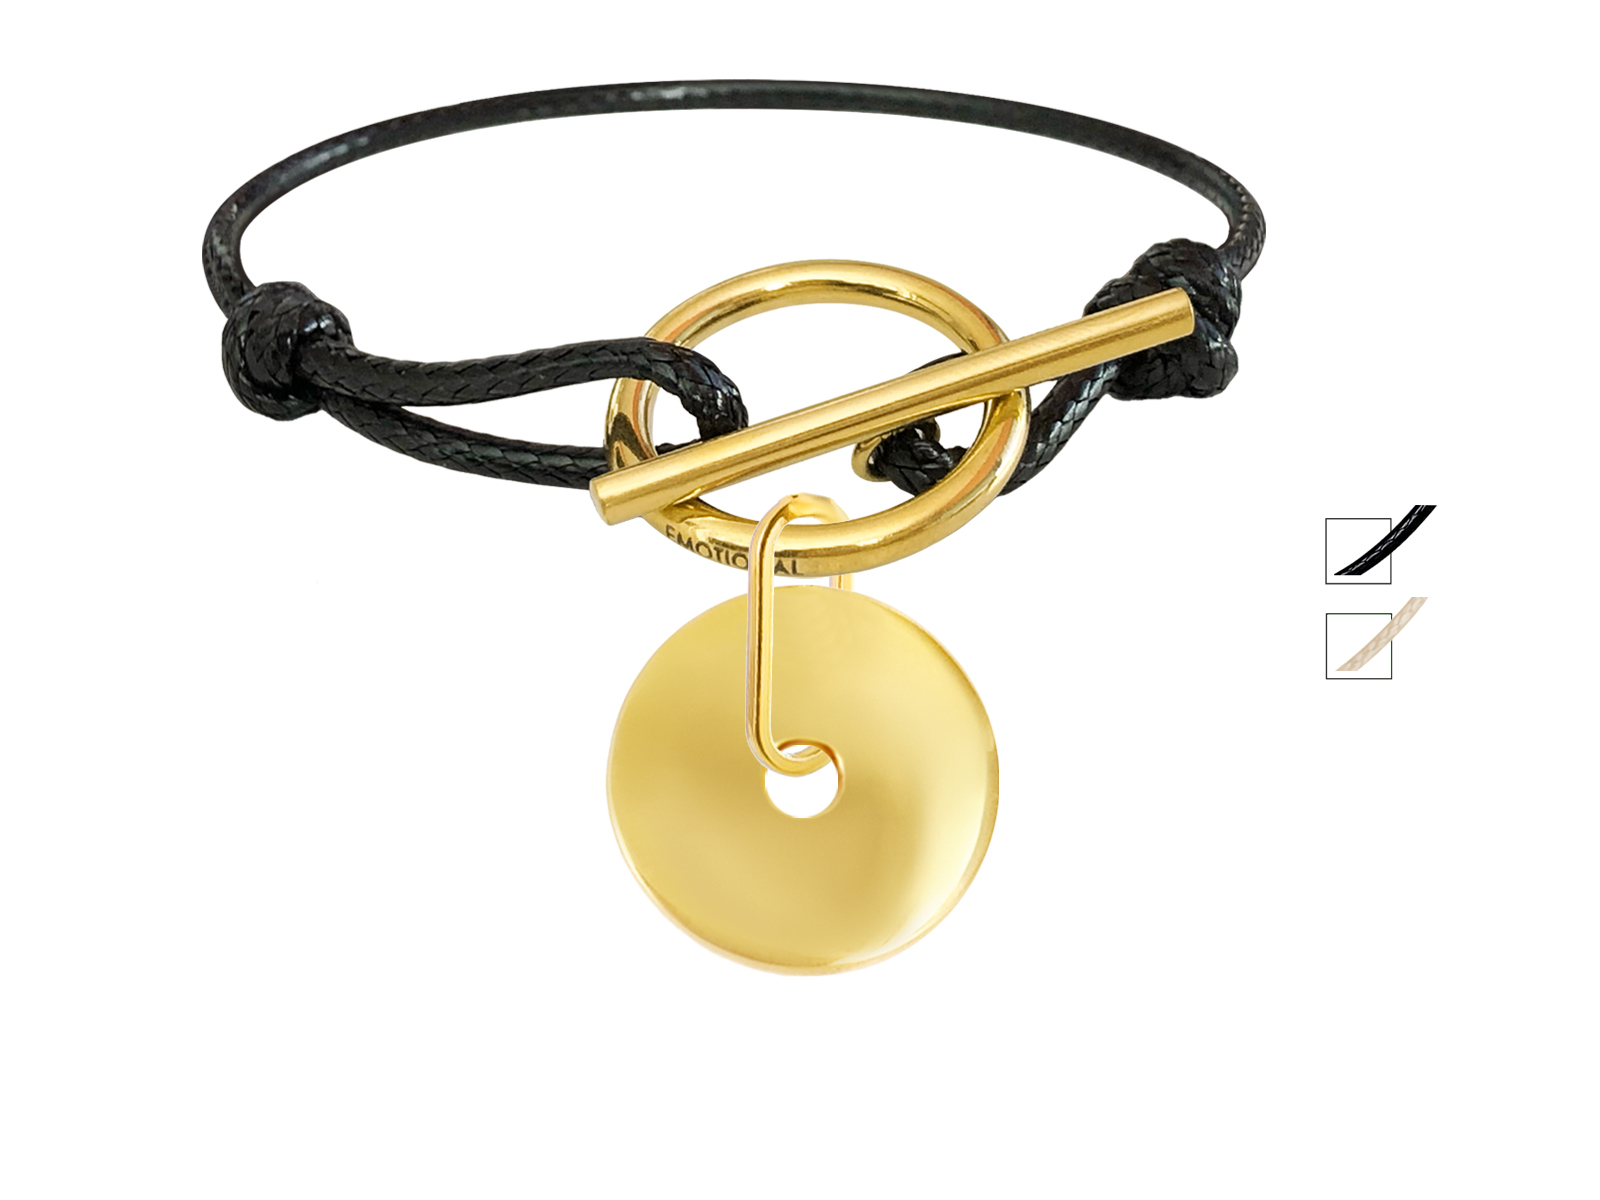 Bracelet cordon noir ajustable avec médaille ronde en acier inoxydable doré  à personnaliser - Bijoux de Mode